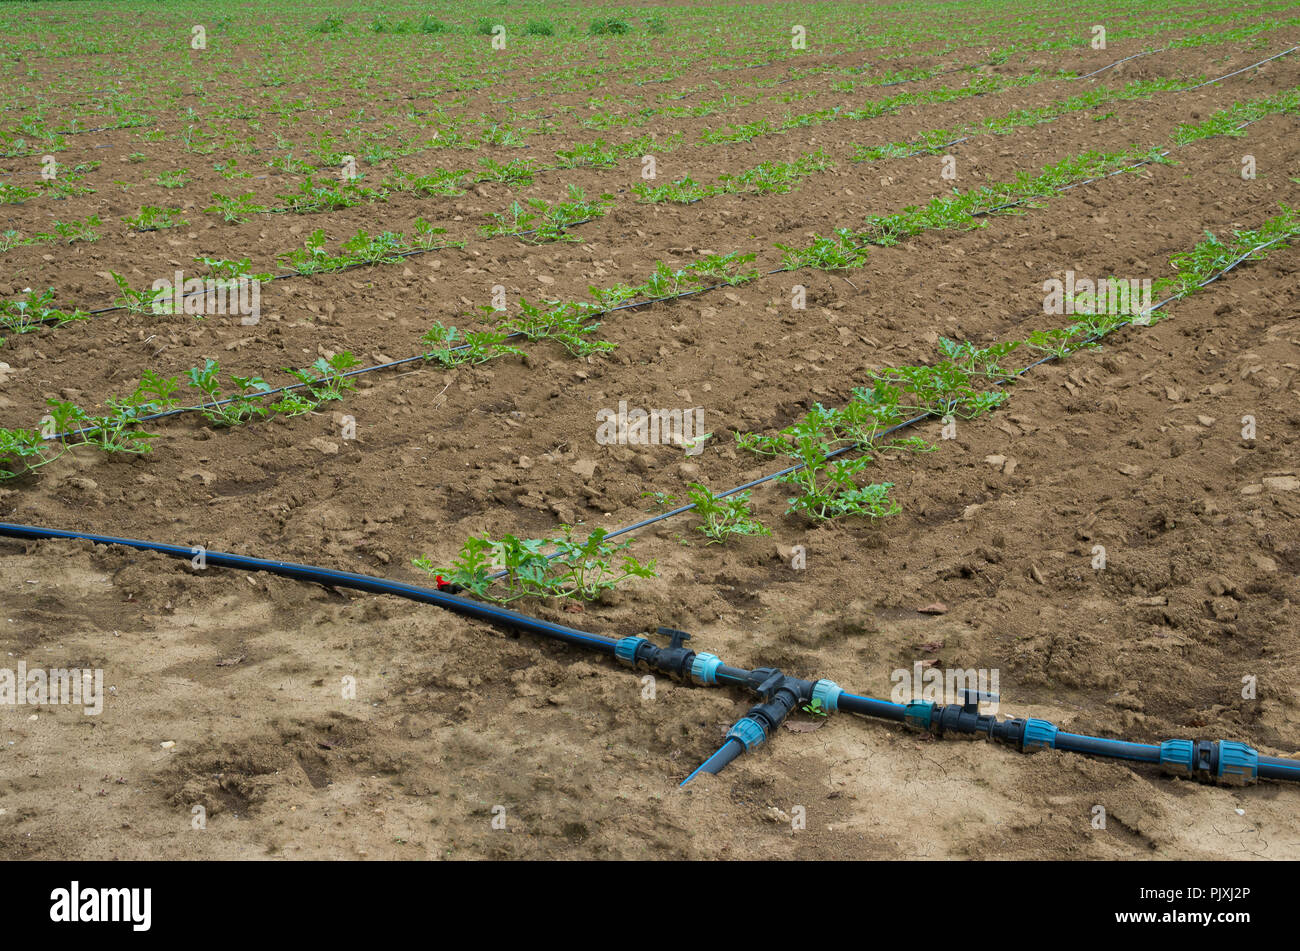 Jeune Pousse de pastèque champ avec l'irrigation goutte-à-goutte Banque D'Images